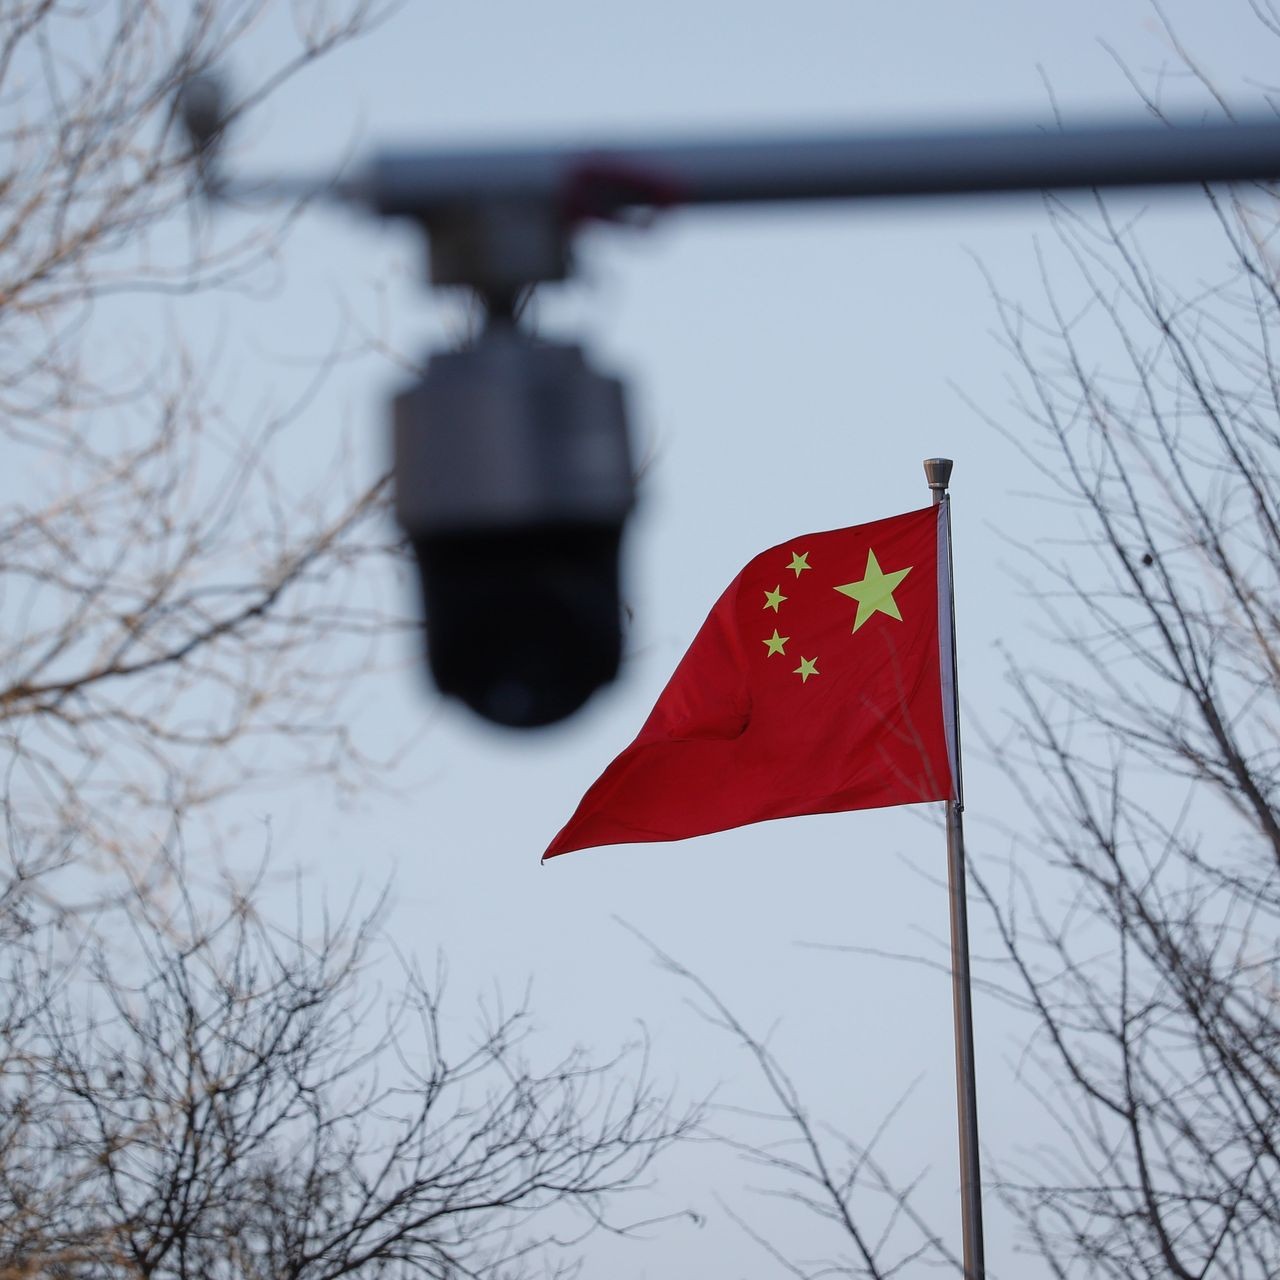 Trung Quốc chuẩn bị 'bận rộn' đón các đoàn cấp cao từ Tây đến Đông sang thăm. (Nguồn: Shutter stock)